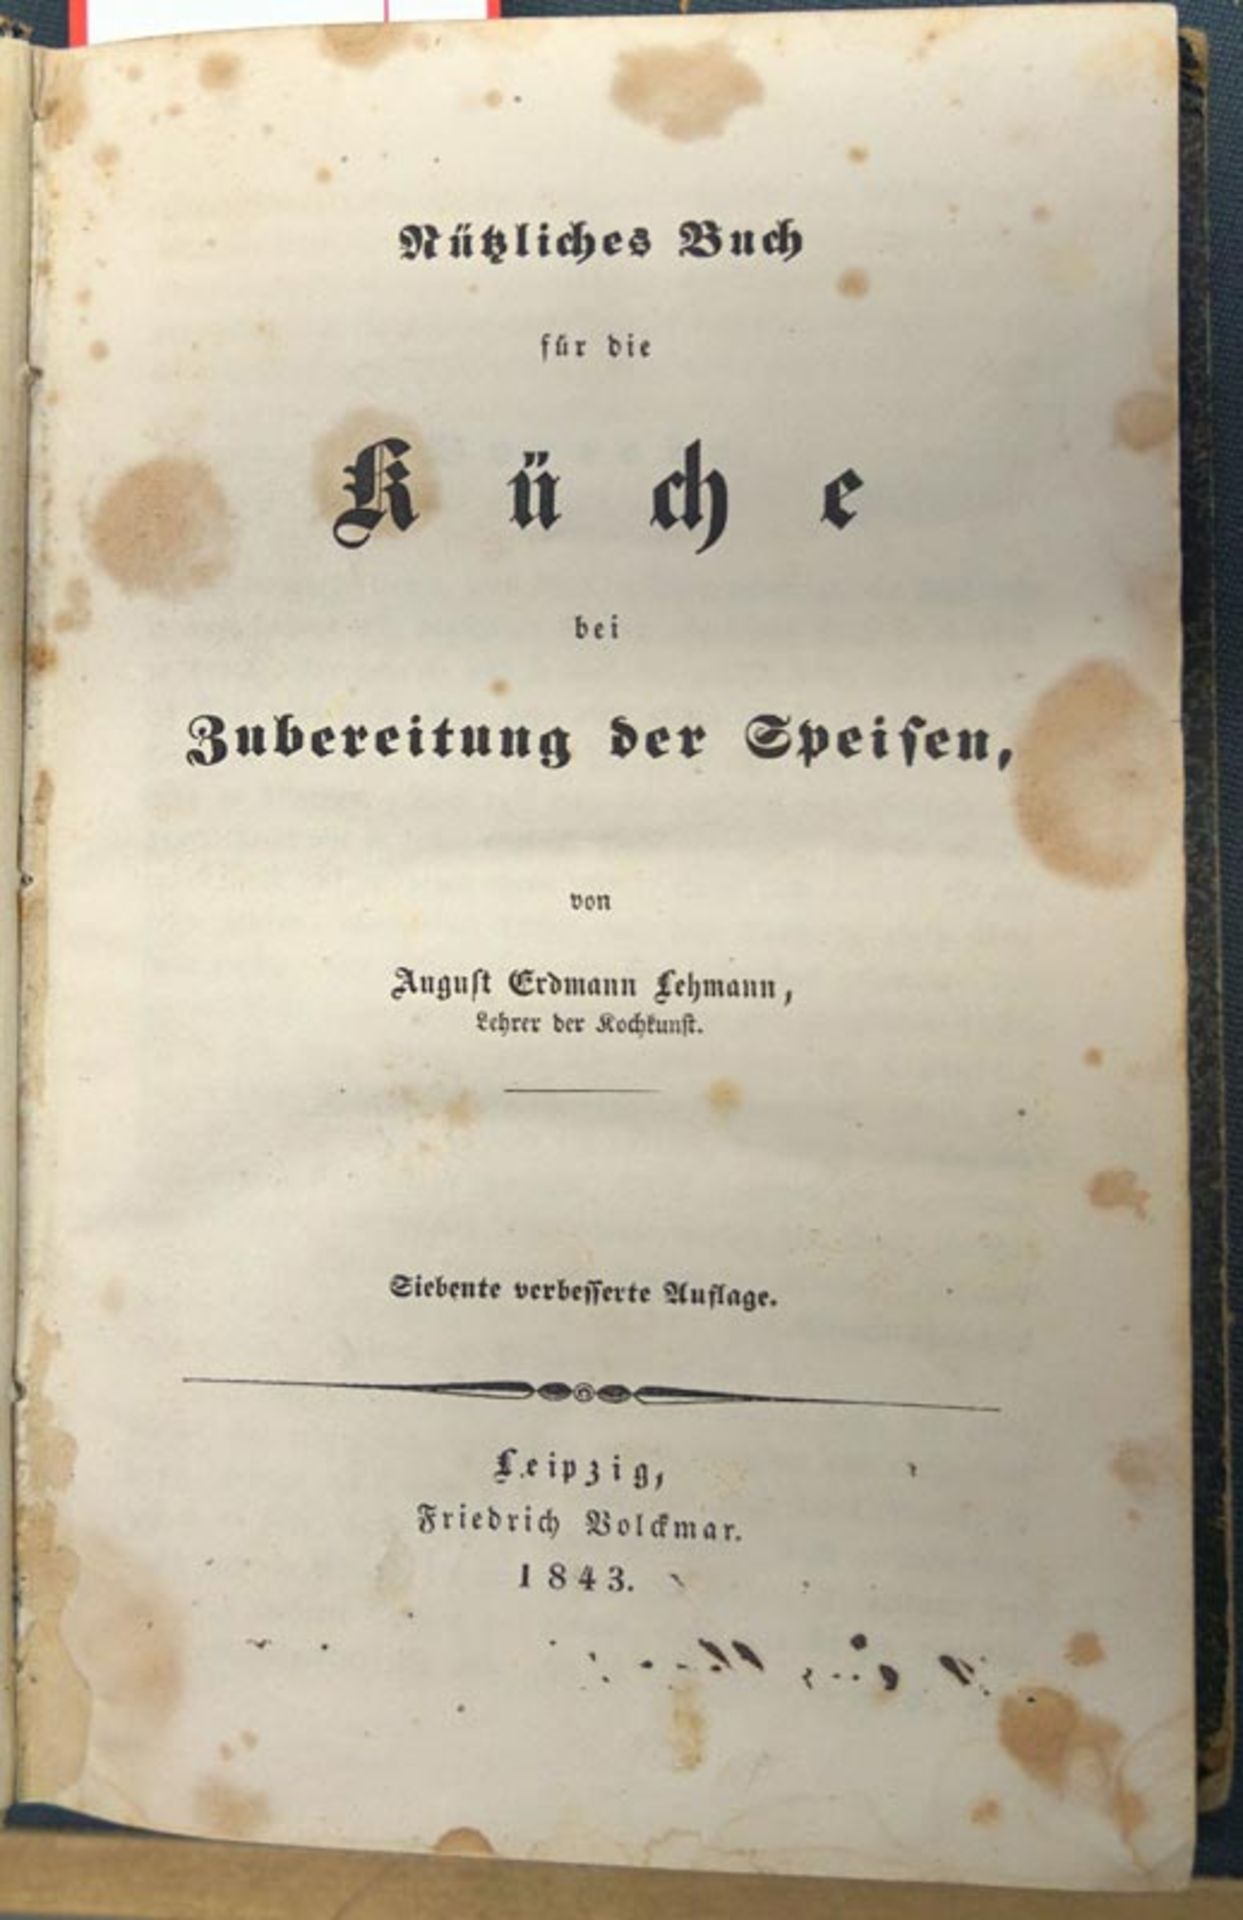 Lehmann, August Erdmann: Nützliches Buch für die Küche bei Zubereitung der Speisen